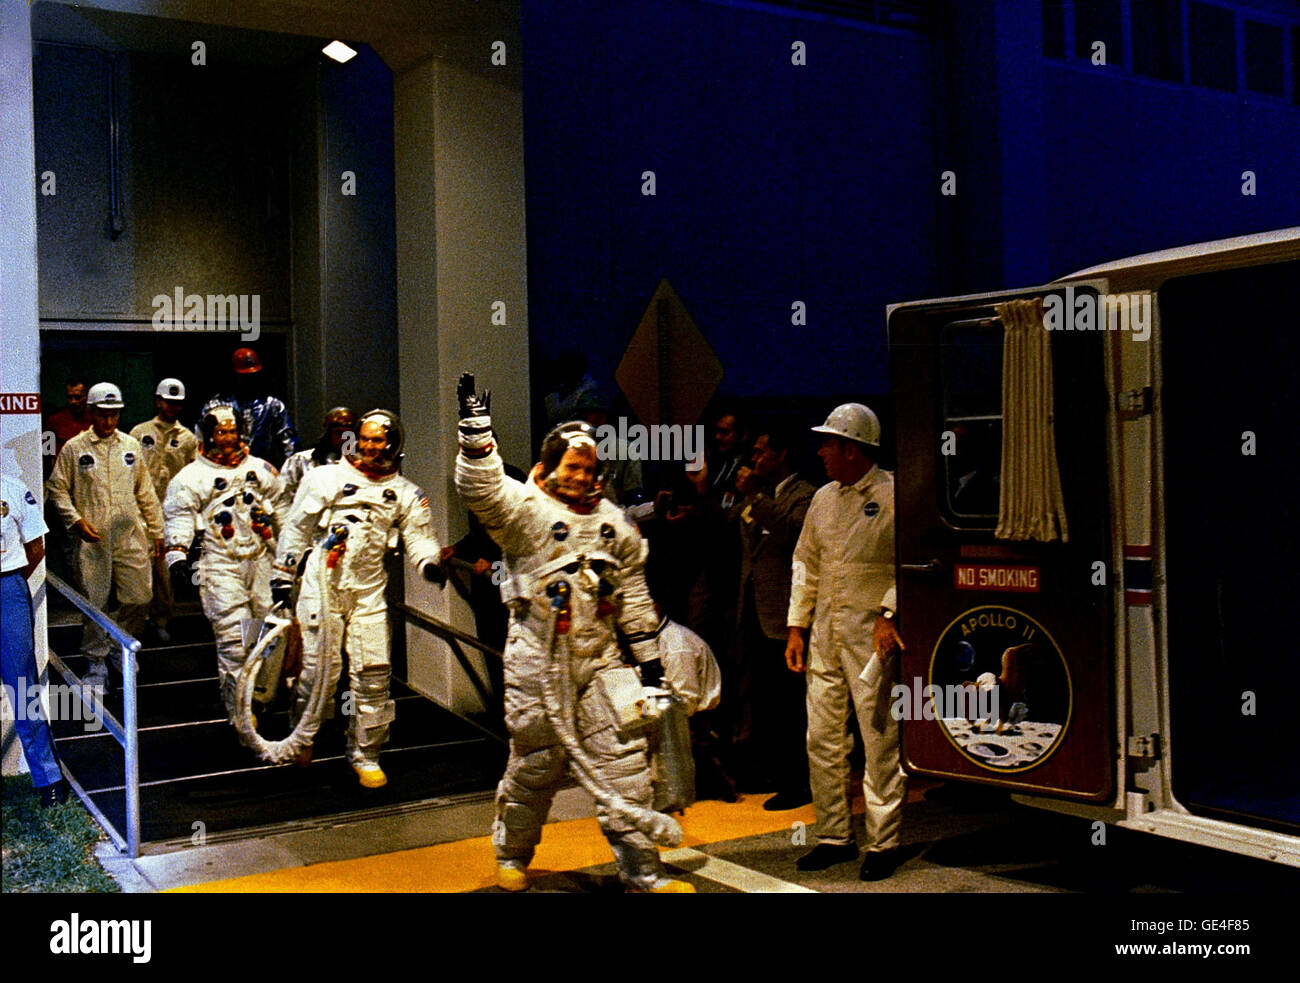 Beschreibung (16. Juli 1969) des Apollo 11 Crew verlässt Kennedy Space Center Manned Spacecraft Operations Building während der Pre-Launch-Countdown. Befehl Modul-Pilot Michael Collins, Mission Kommandant Neil Armstrong und Buzz Aldrin, Pilot der Mondlandefähre bereiten die Spezialtransport-van zum Launch Complex 39A fahren wo erwartete sie ihr Raumschiff. Liftoff ereignete sich um 9:32 Uhr MESZ, 16. Juli 1969.  Bild-Gutschrift: NASA Bild # S69-39956 Stockfoto